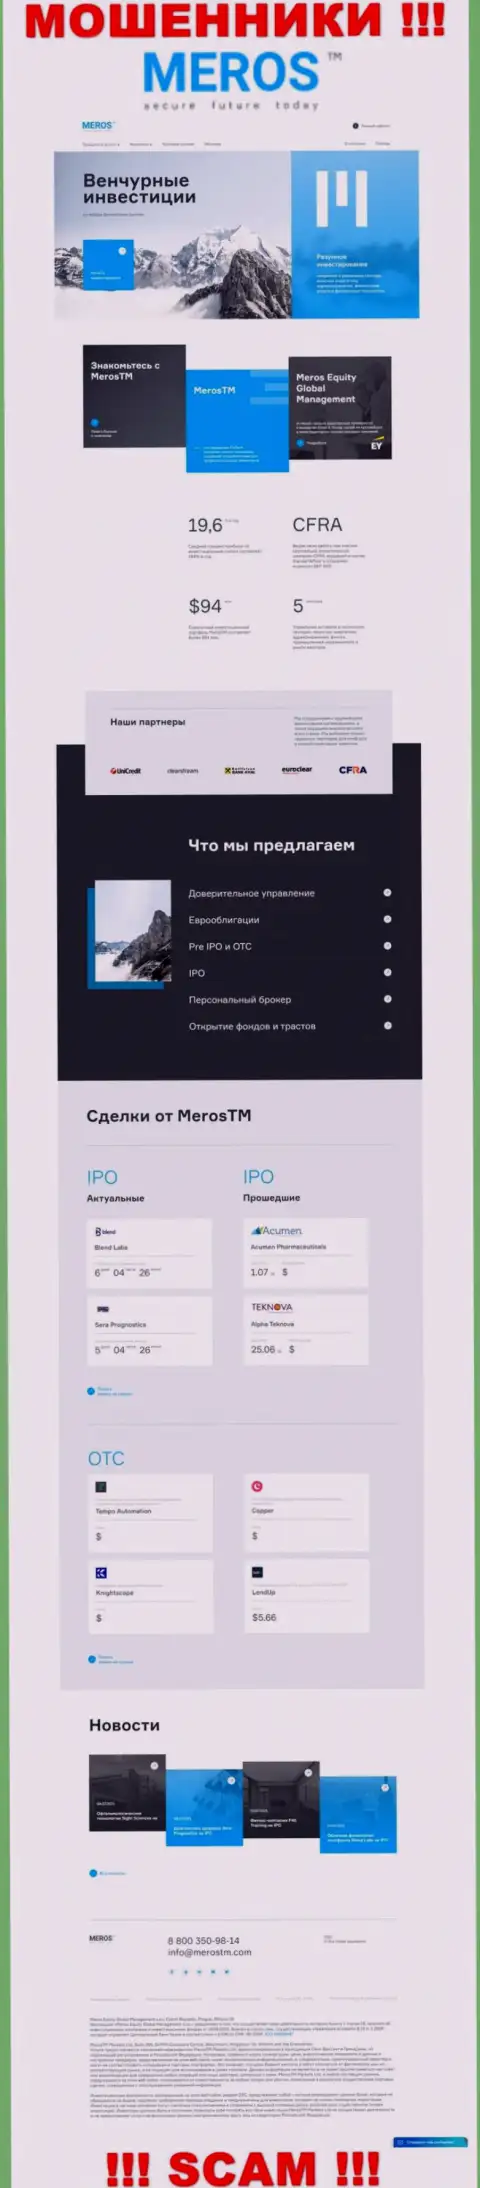 Обзор официального сайта лохотронщиков MerosTM